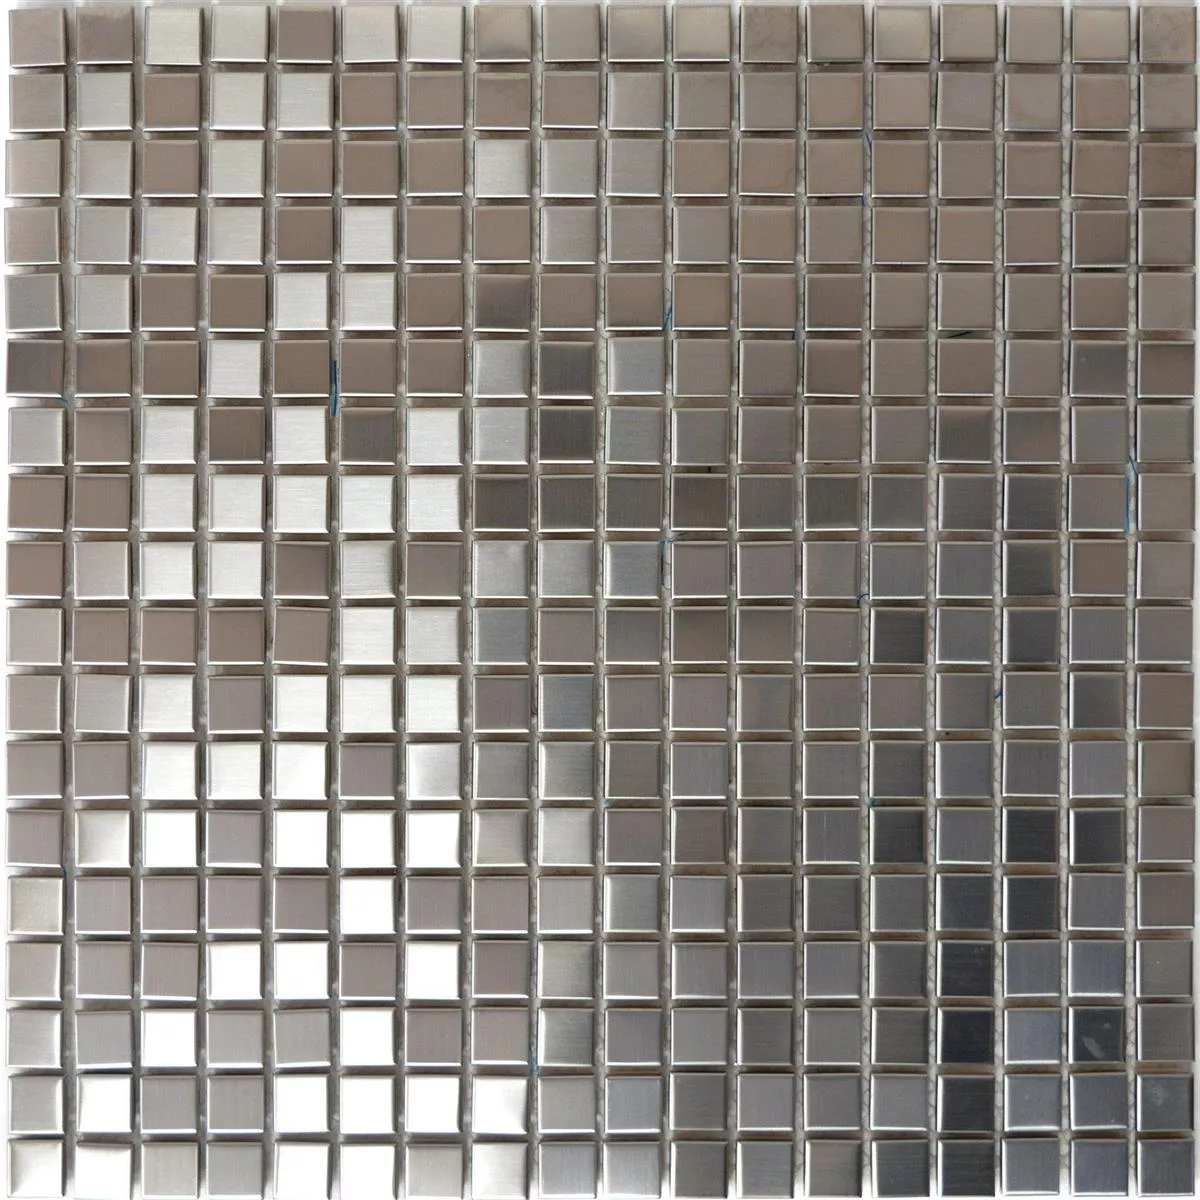 Campione Metallo Mosaico Magnet Spazzolato Piazza 15